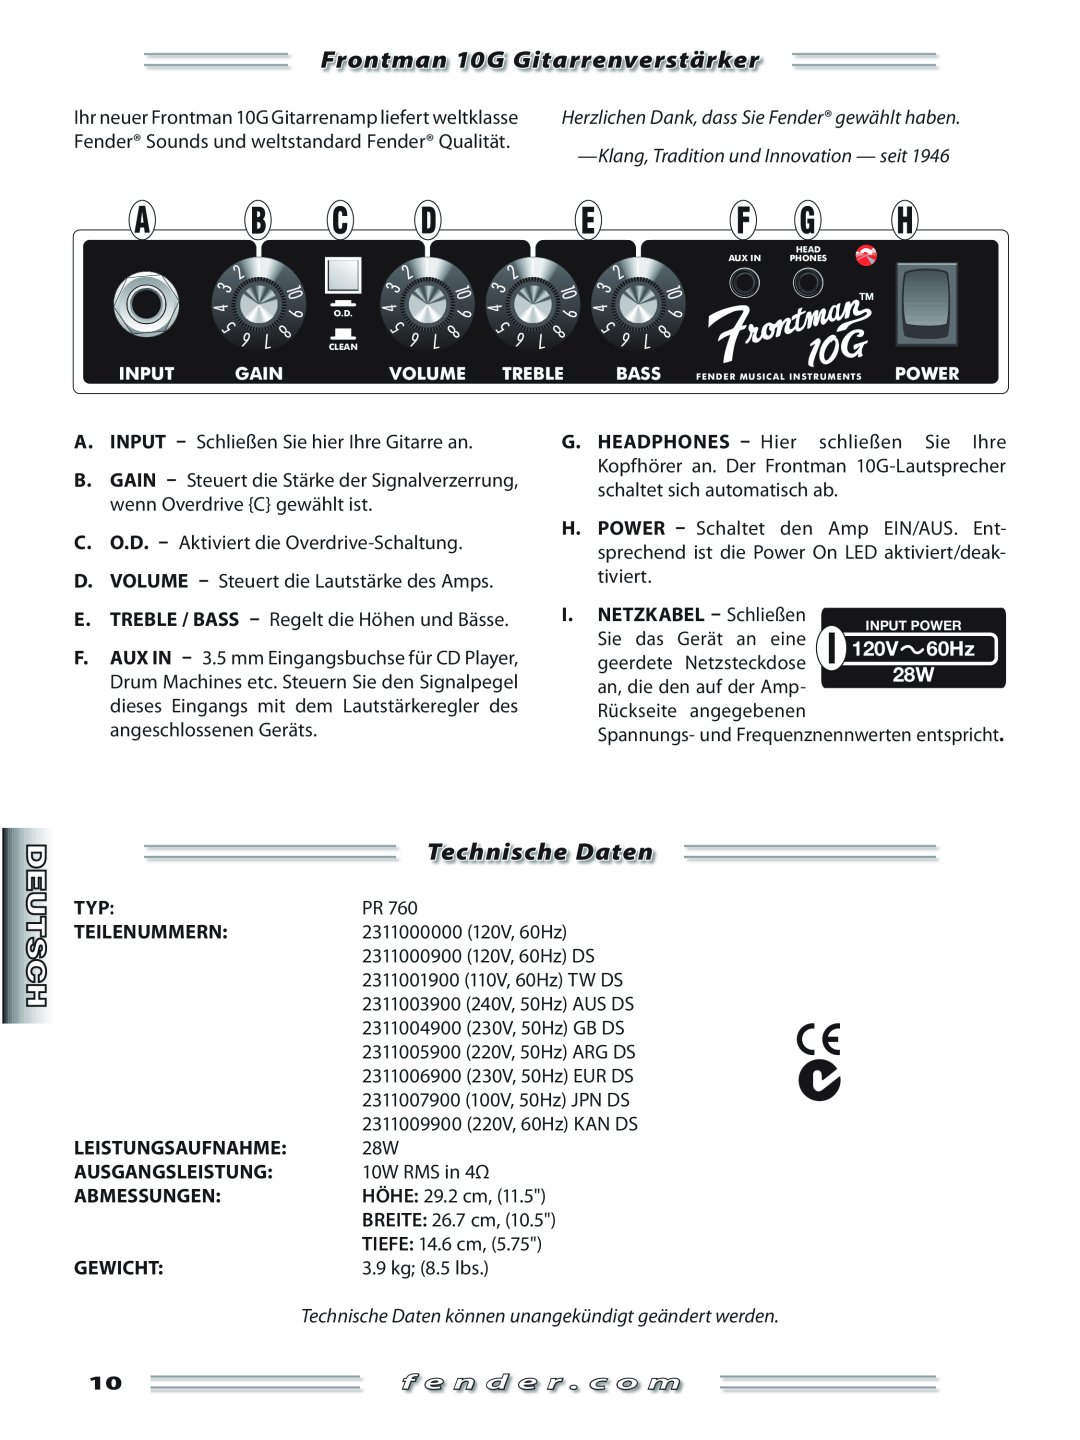 Fender Frontman 10G Gitarrenverstärker, Technische Daten, Fender Sounds und weltstandard Fender Qualität, Teilenummern 